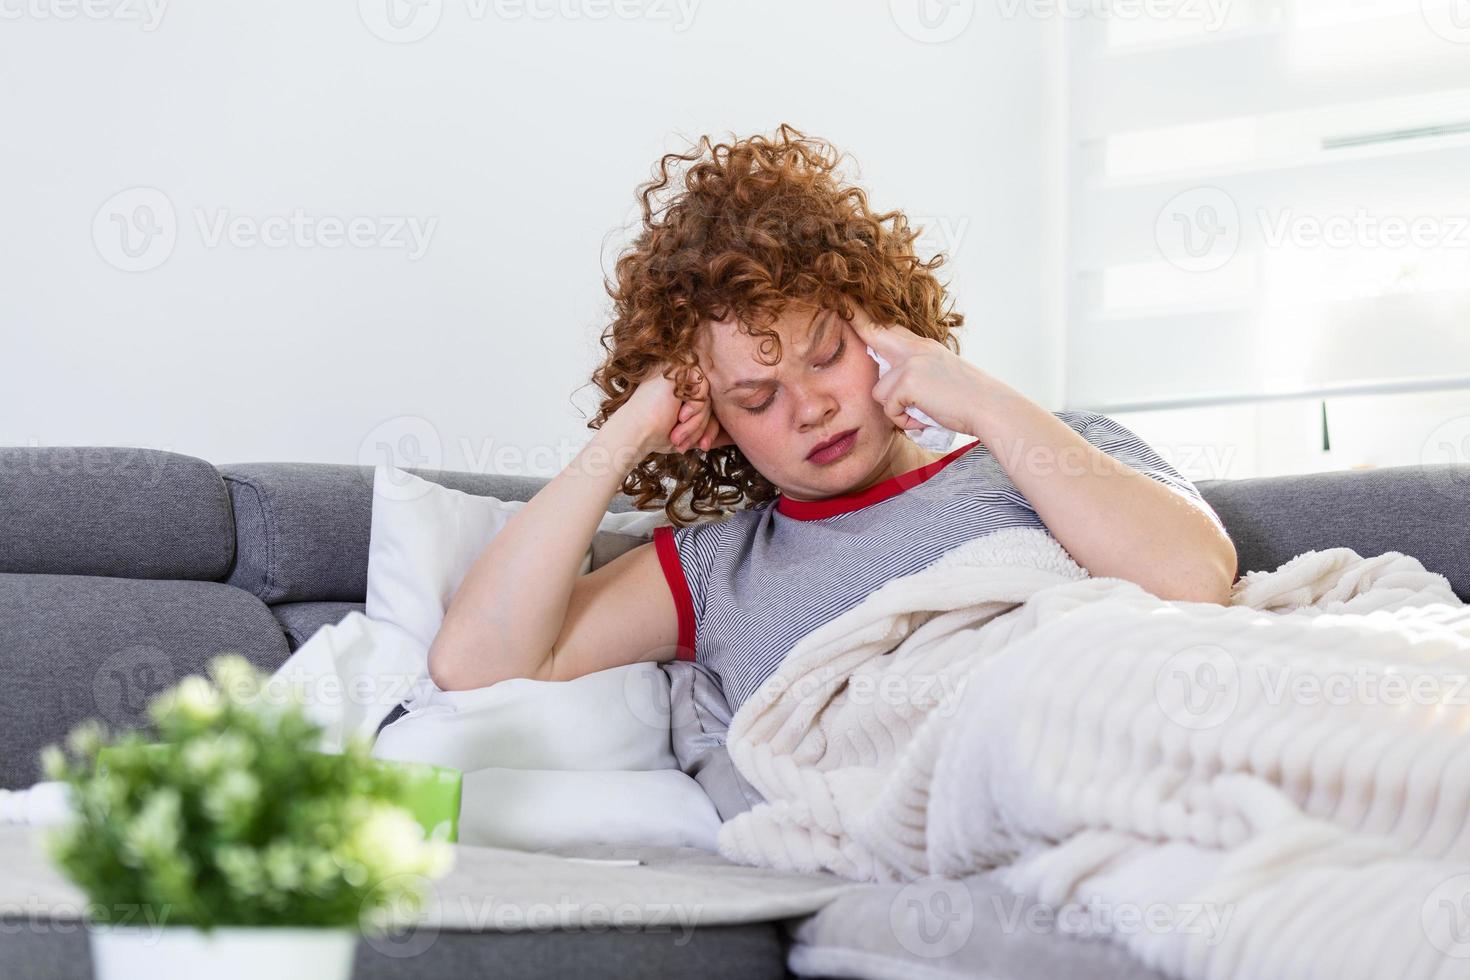 upprörd deprimerad ung kvinna liggande på soffa känsla stark huvudvärk migrän, ledsen trött dåsig tonåring utmattad flicka vilar påfrestande till sömn efter nervös spänning och påfrestning, sömnighet begrepp foto